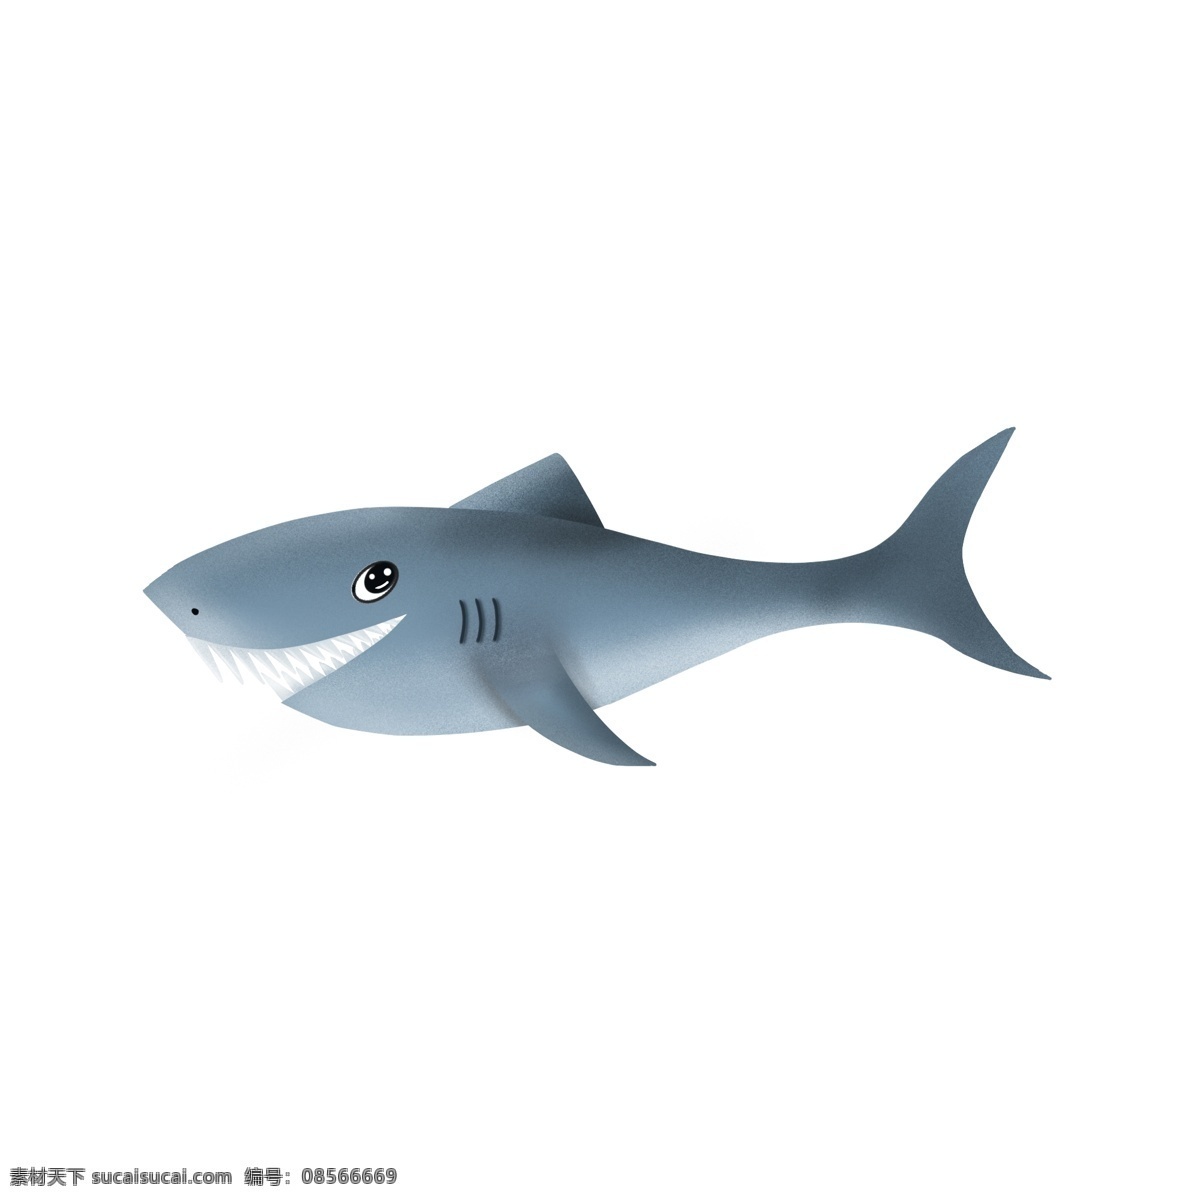 呆 萌 可爱 的卡 通 鲨鱼 元素 卡通 可爱的 呆萌的鲨鱼 海洋动物 鱼 鱼类